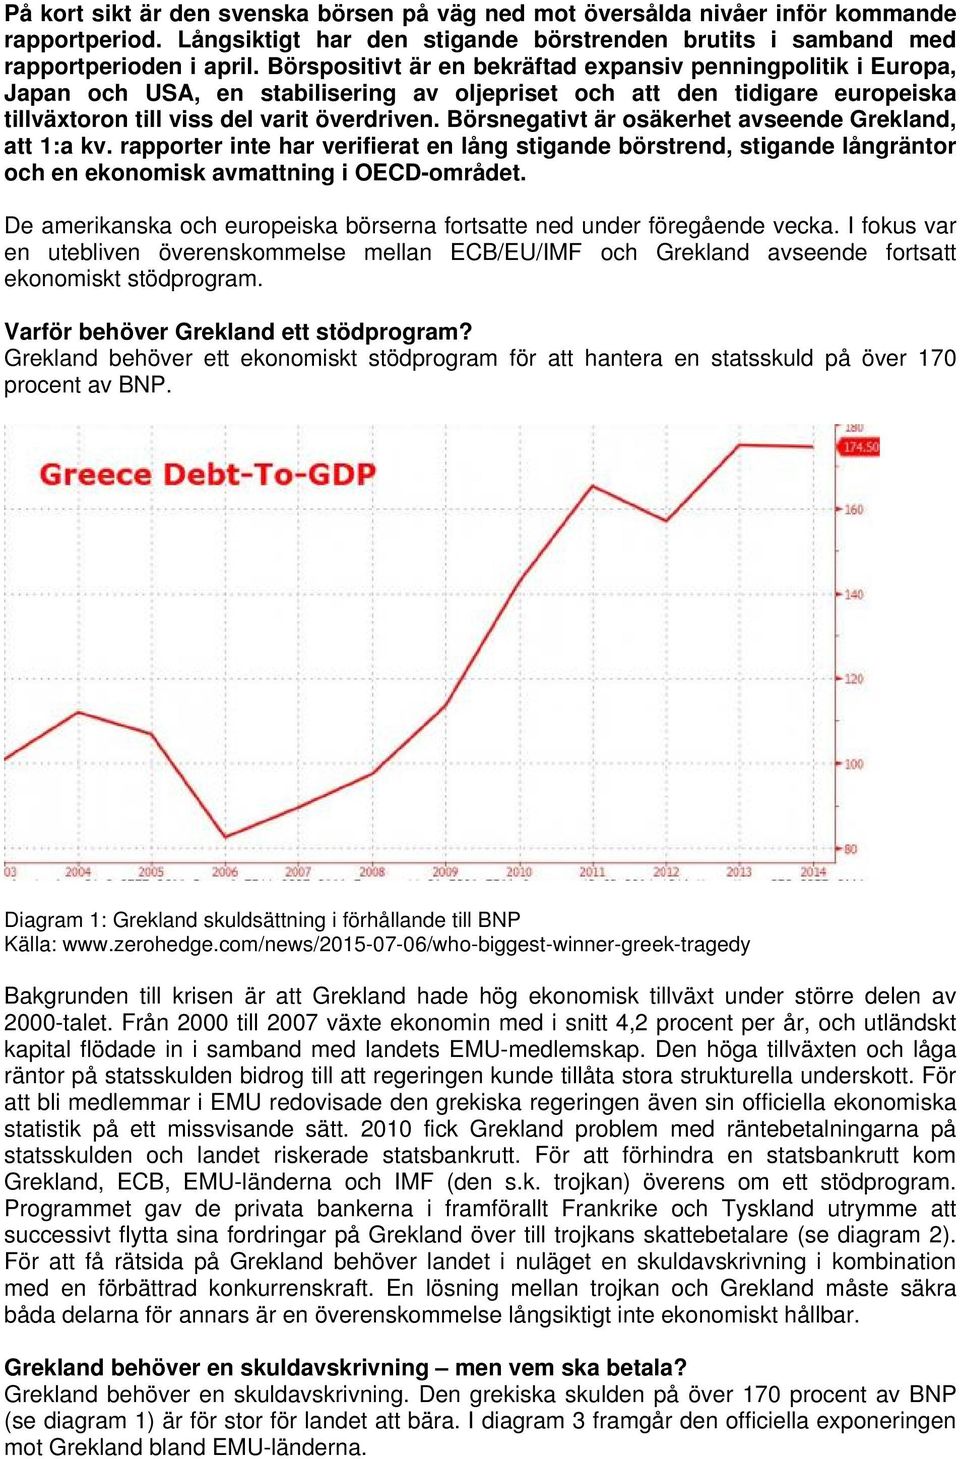 Börsnegativt är osäkerhet avseende Grekland, att 1:a kv. rapporter inte har verifierat en lång stigande börstrend, stigande långräntor och en ekonomisk avmattning i OECD-området.